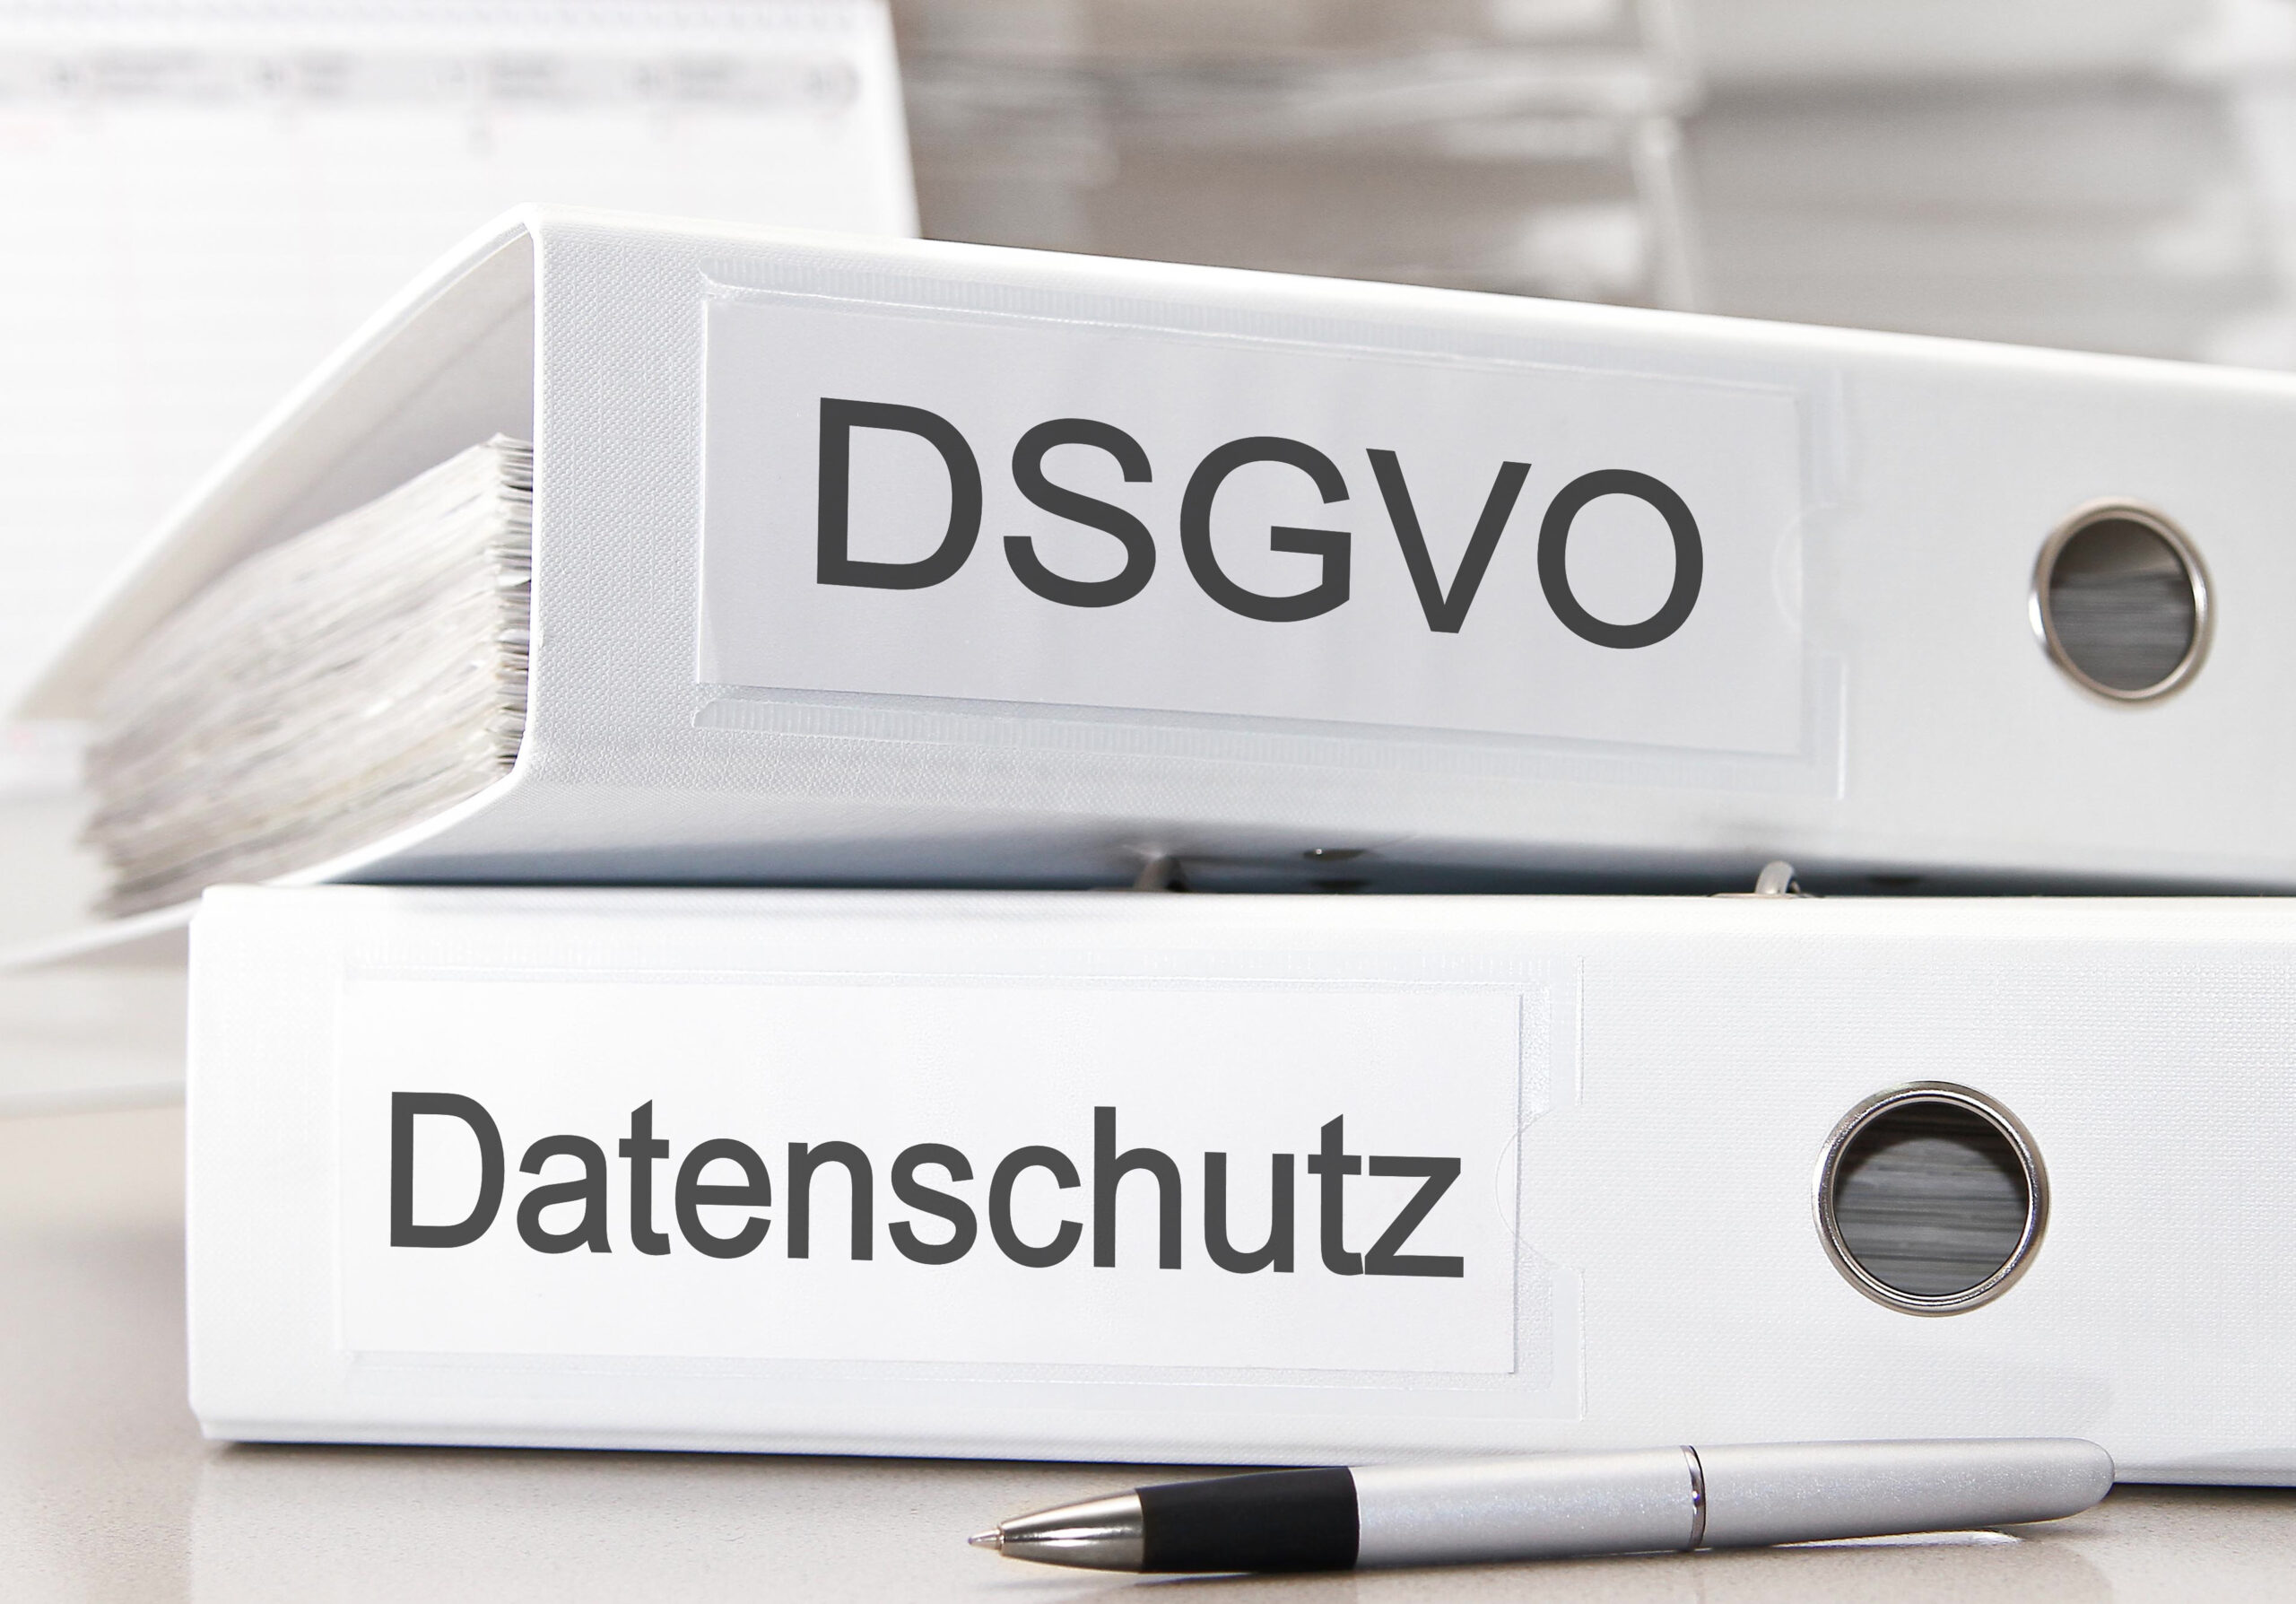 DSGVO und Datenschutz liegen als Ordner auf dem Bürotisch